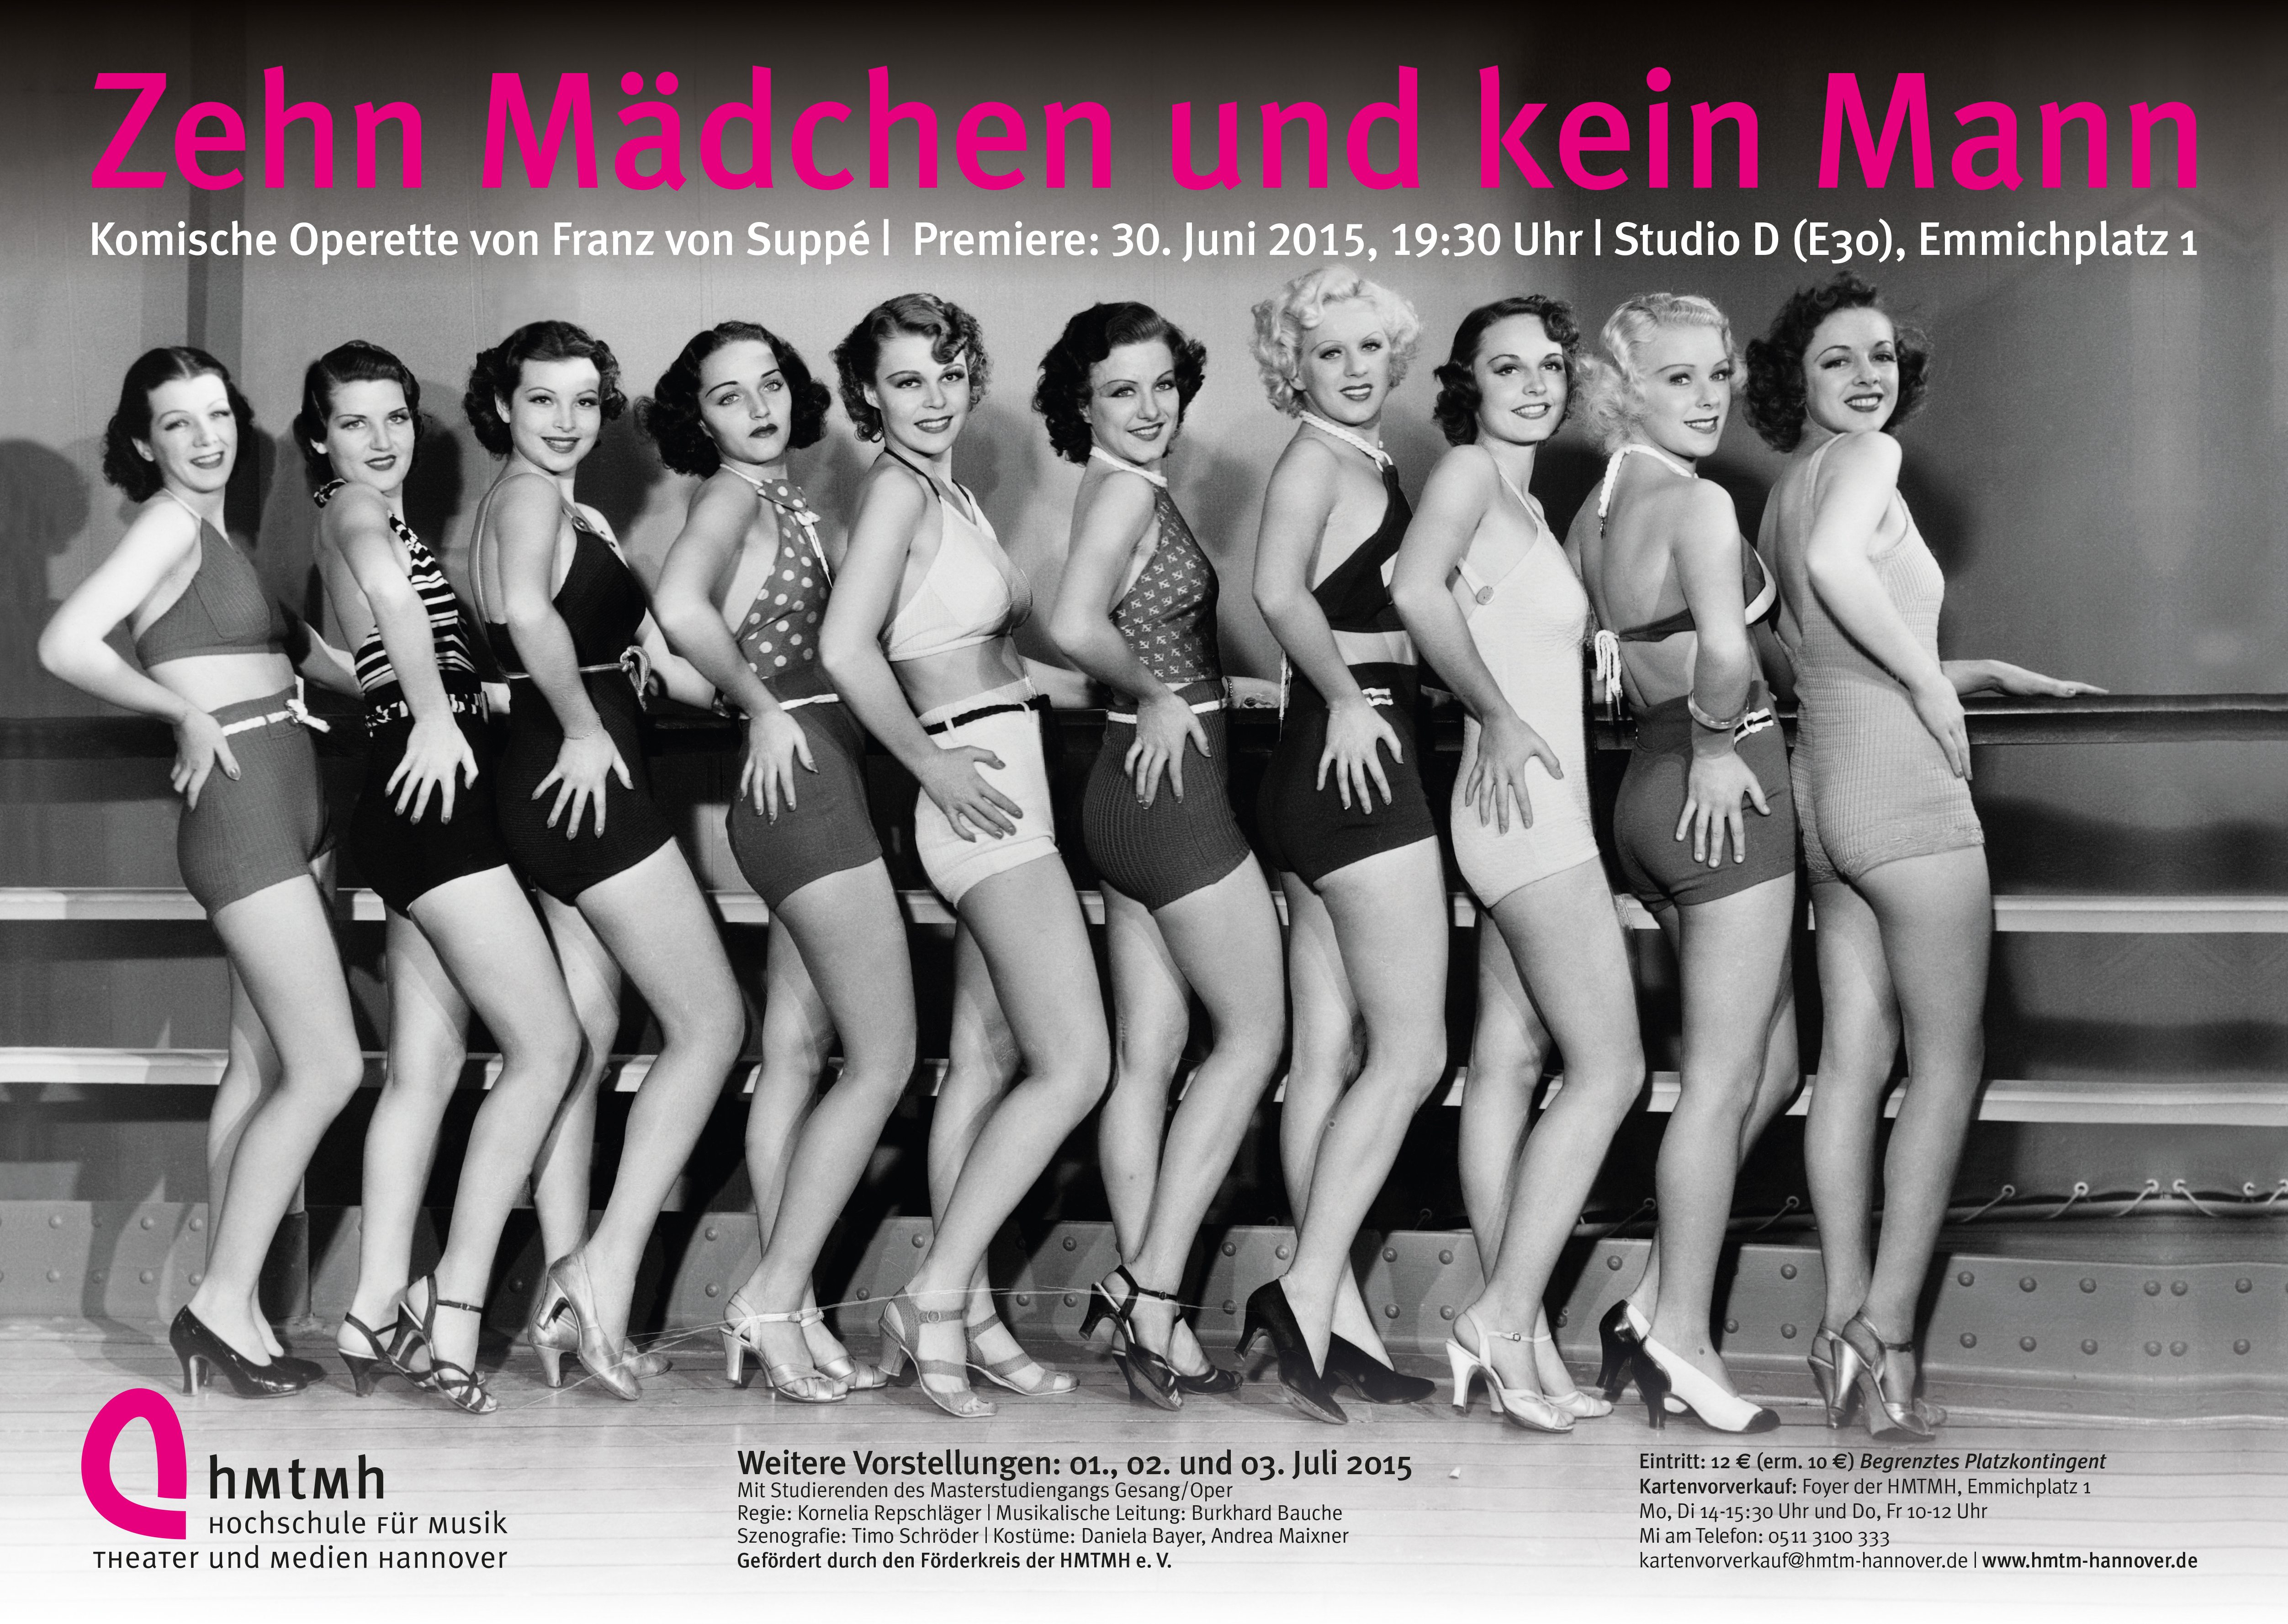 Poster for the 2015 production of "Zehn Mädchen und kein Mann."